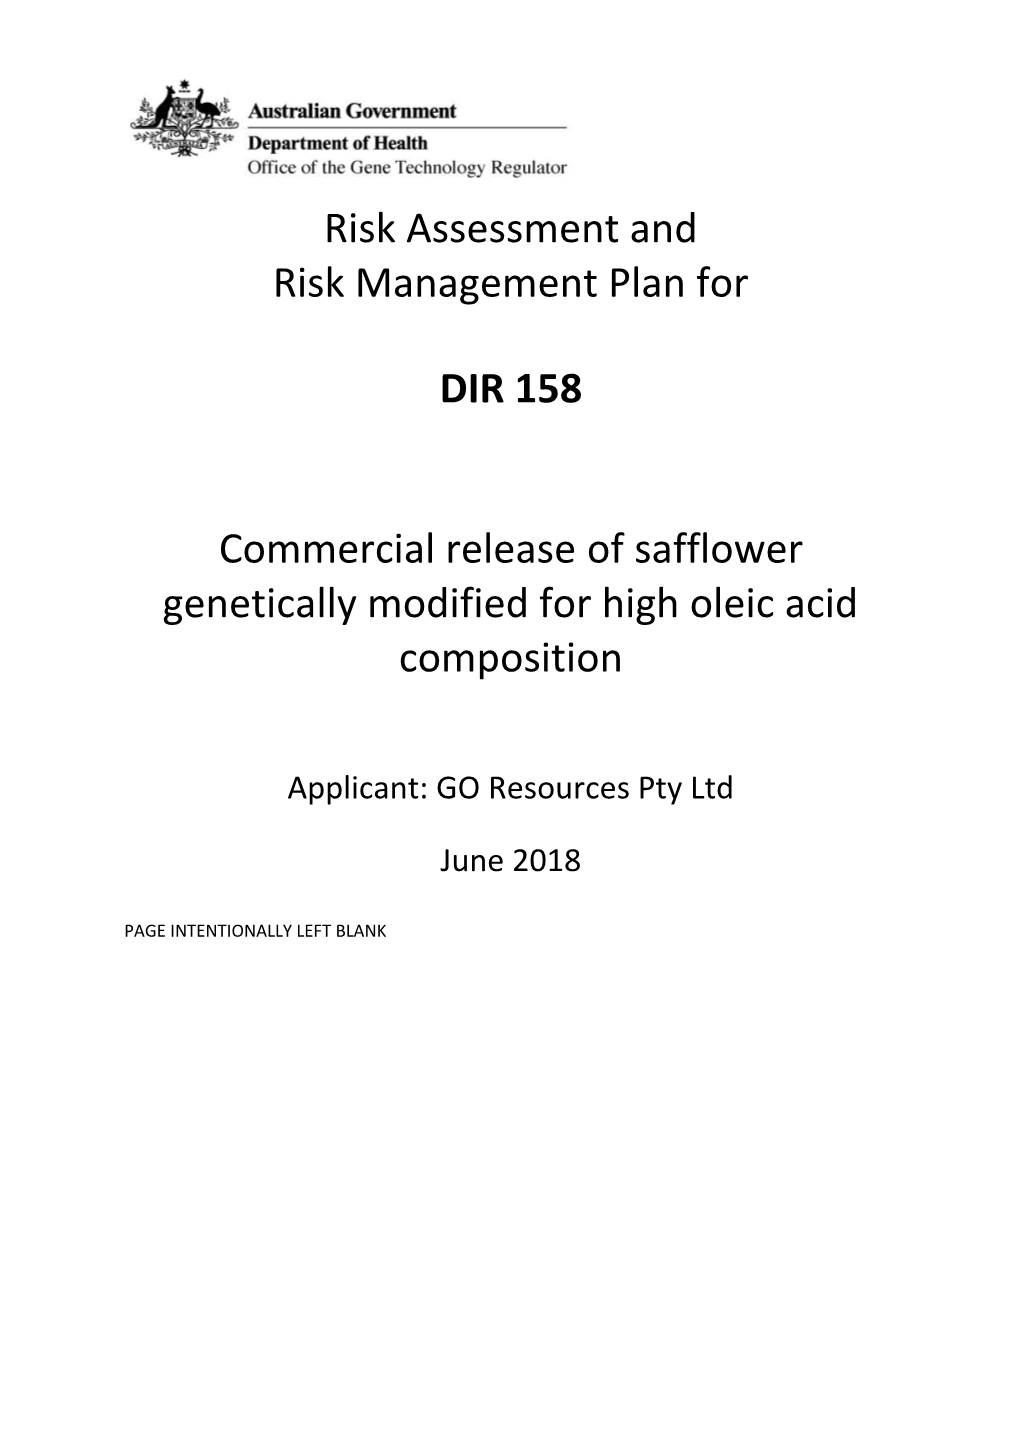 DIR 158 - Full Risk Assessment and Risk Management Plan